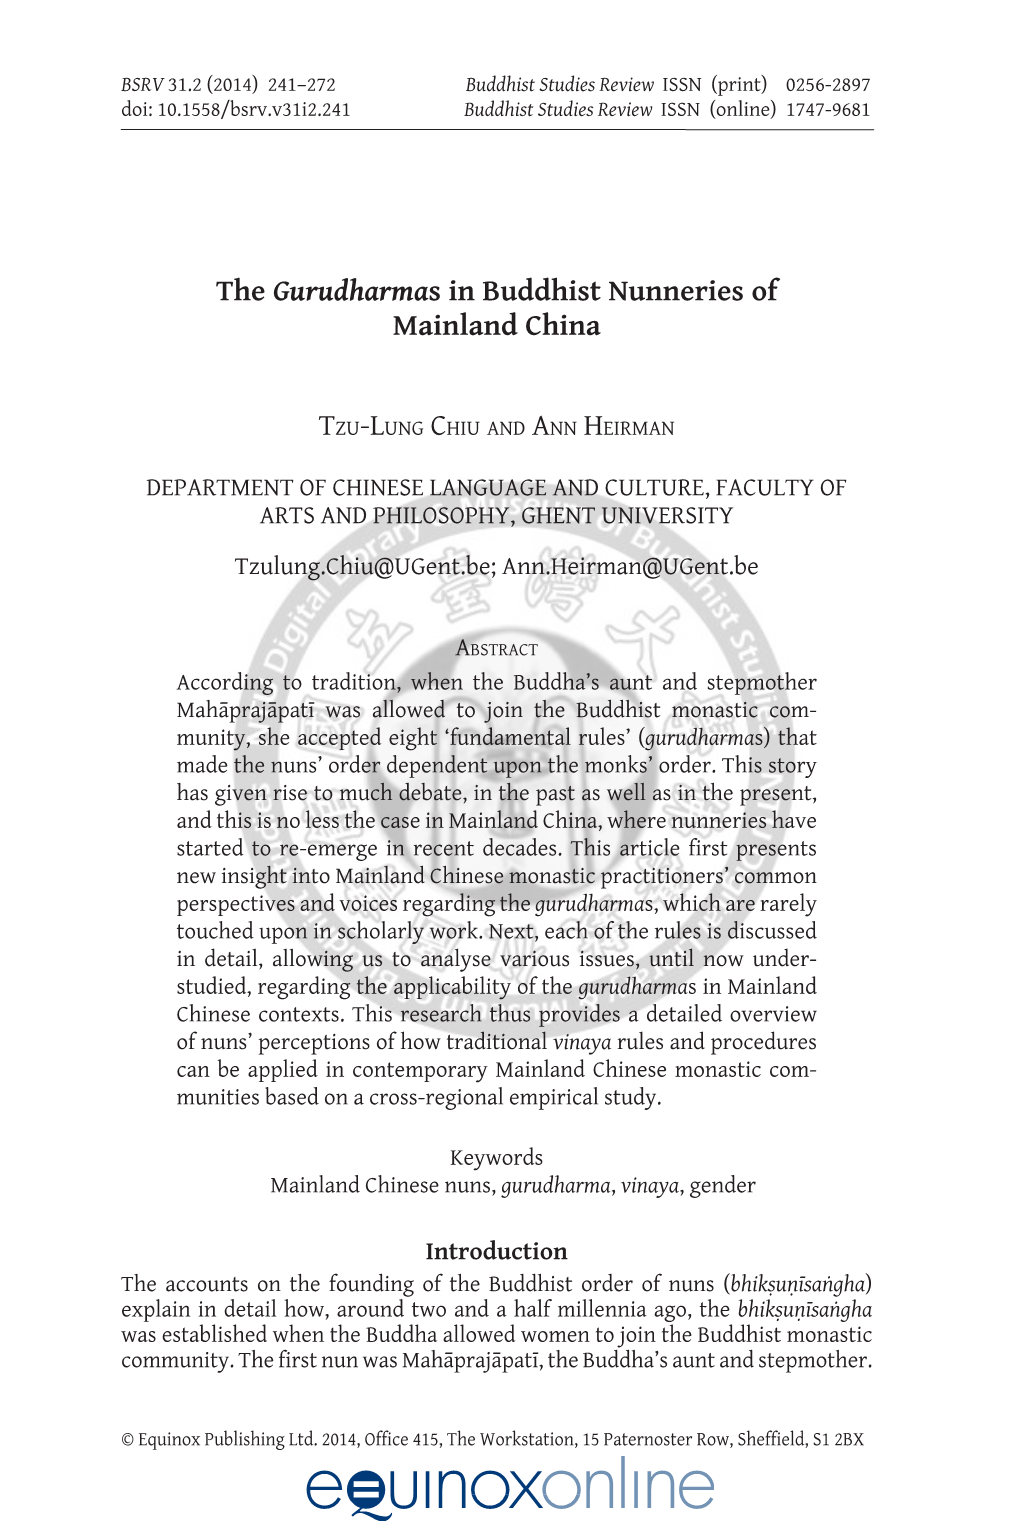 The Gurudharmas in Buddhist Nunneries of Mainland China